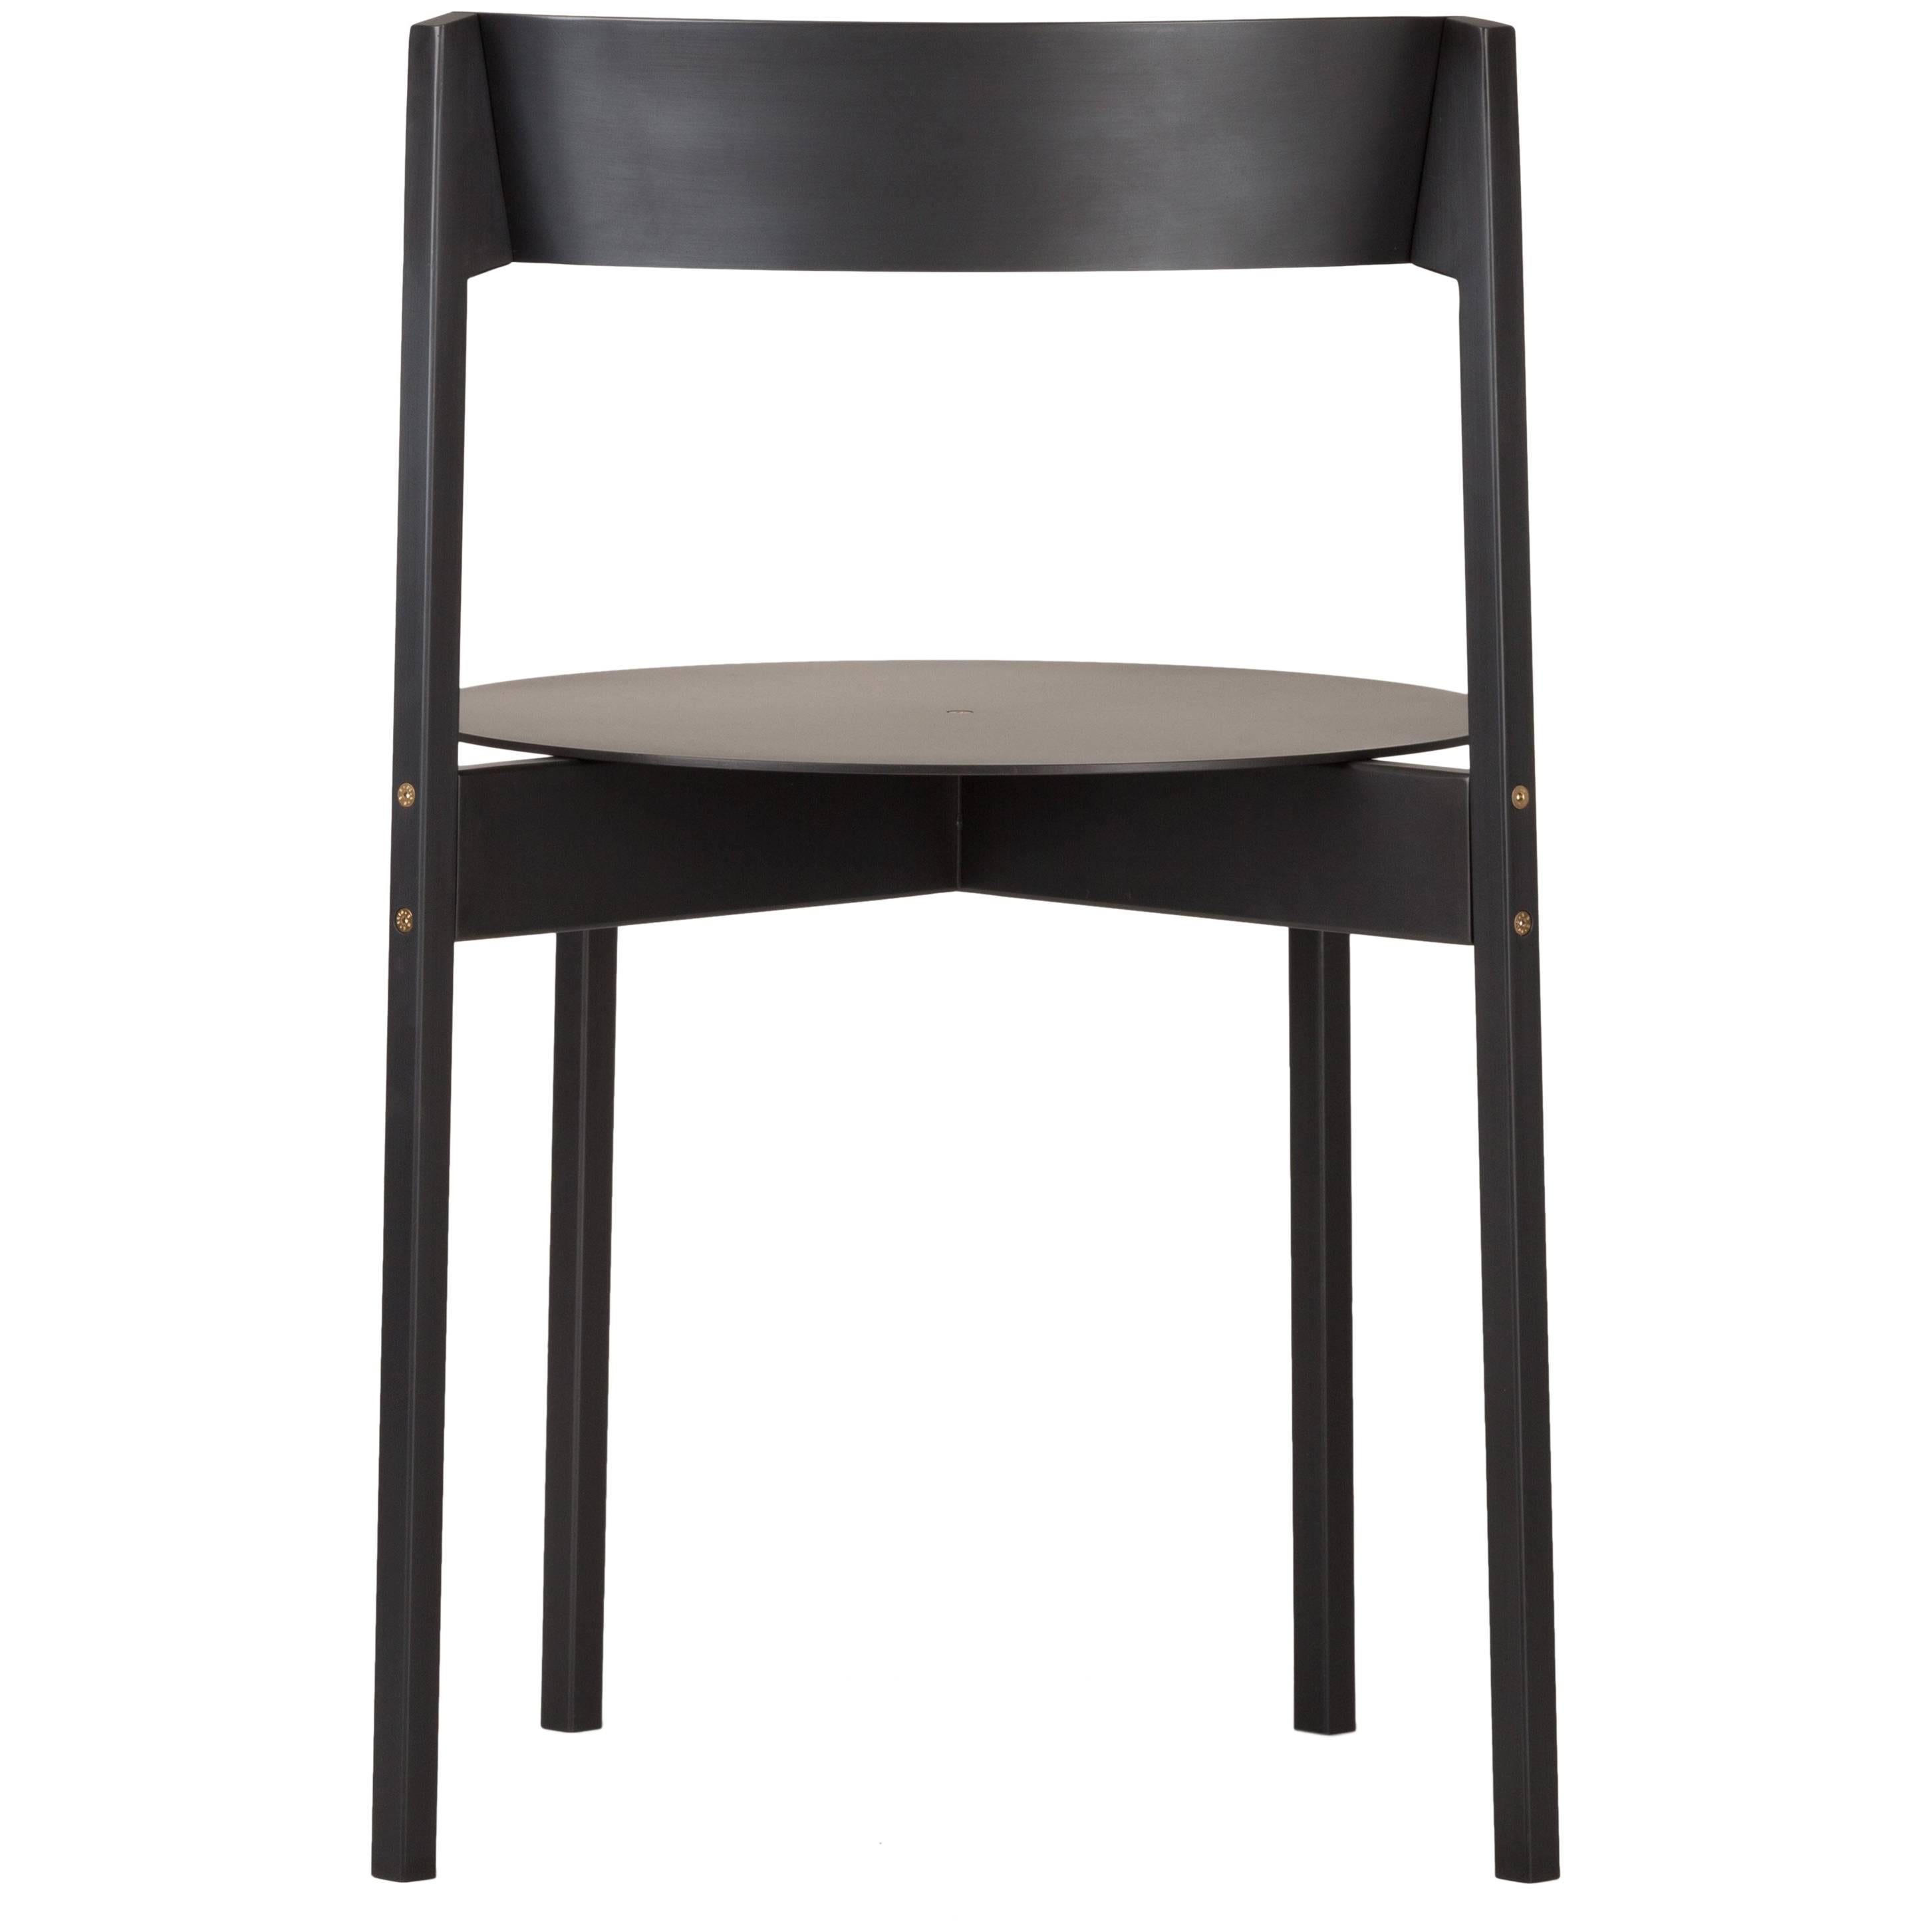 Chaise modulaire empilable en fer caractérisée par des lignes épurées et fondamentales, et une esthétique authentique enrichie par des vis hexagonales à tête fraisée en laiton. 

La chaise est composée de seulement sept éléments qui peuvent être